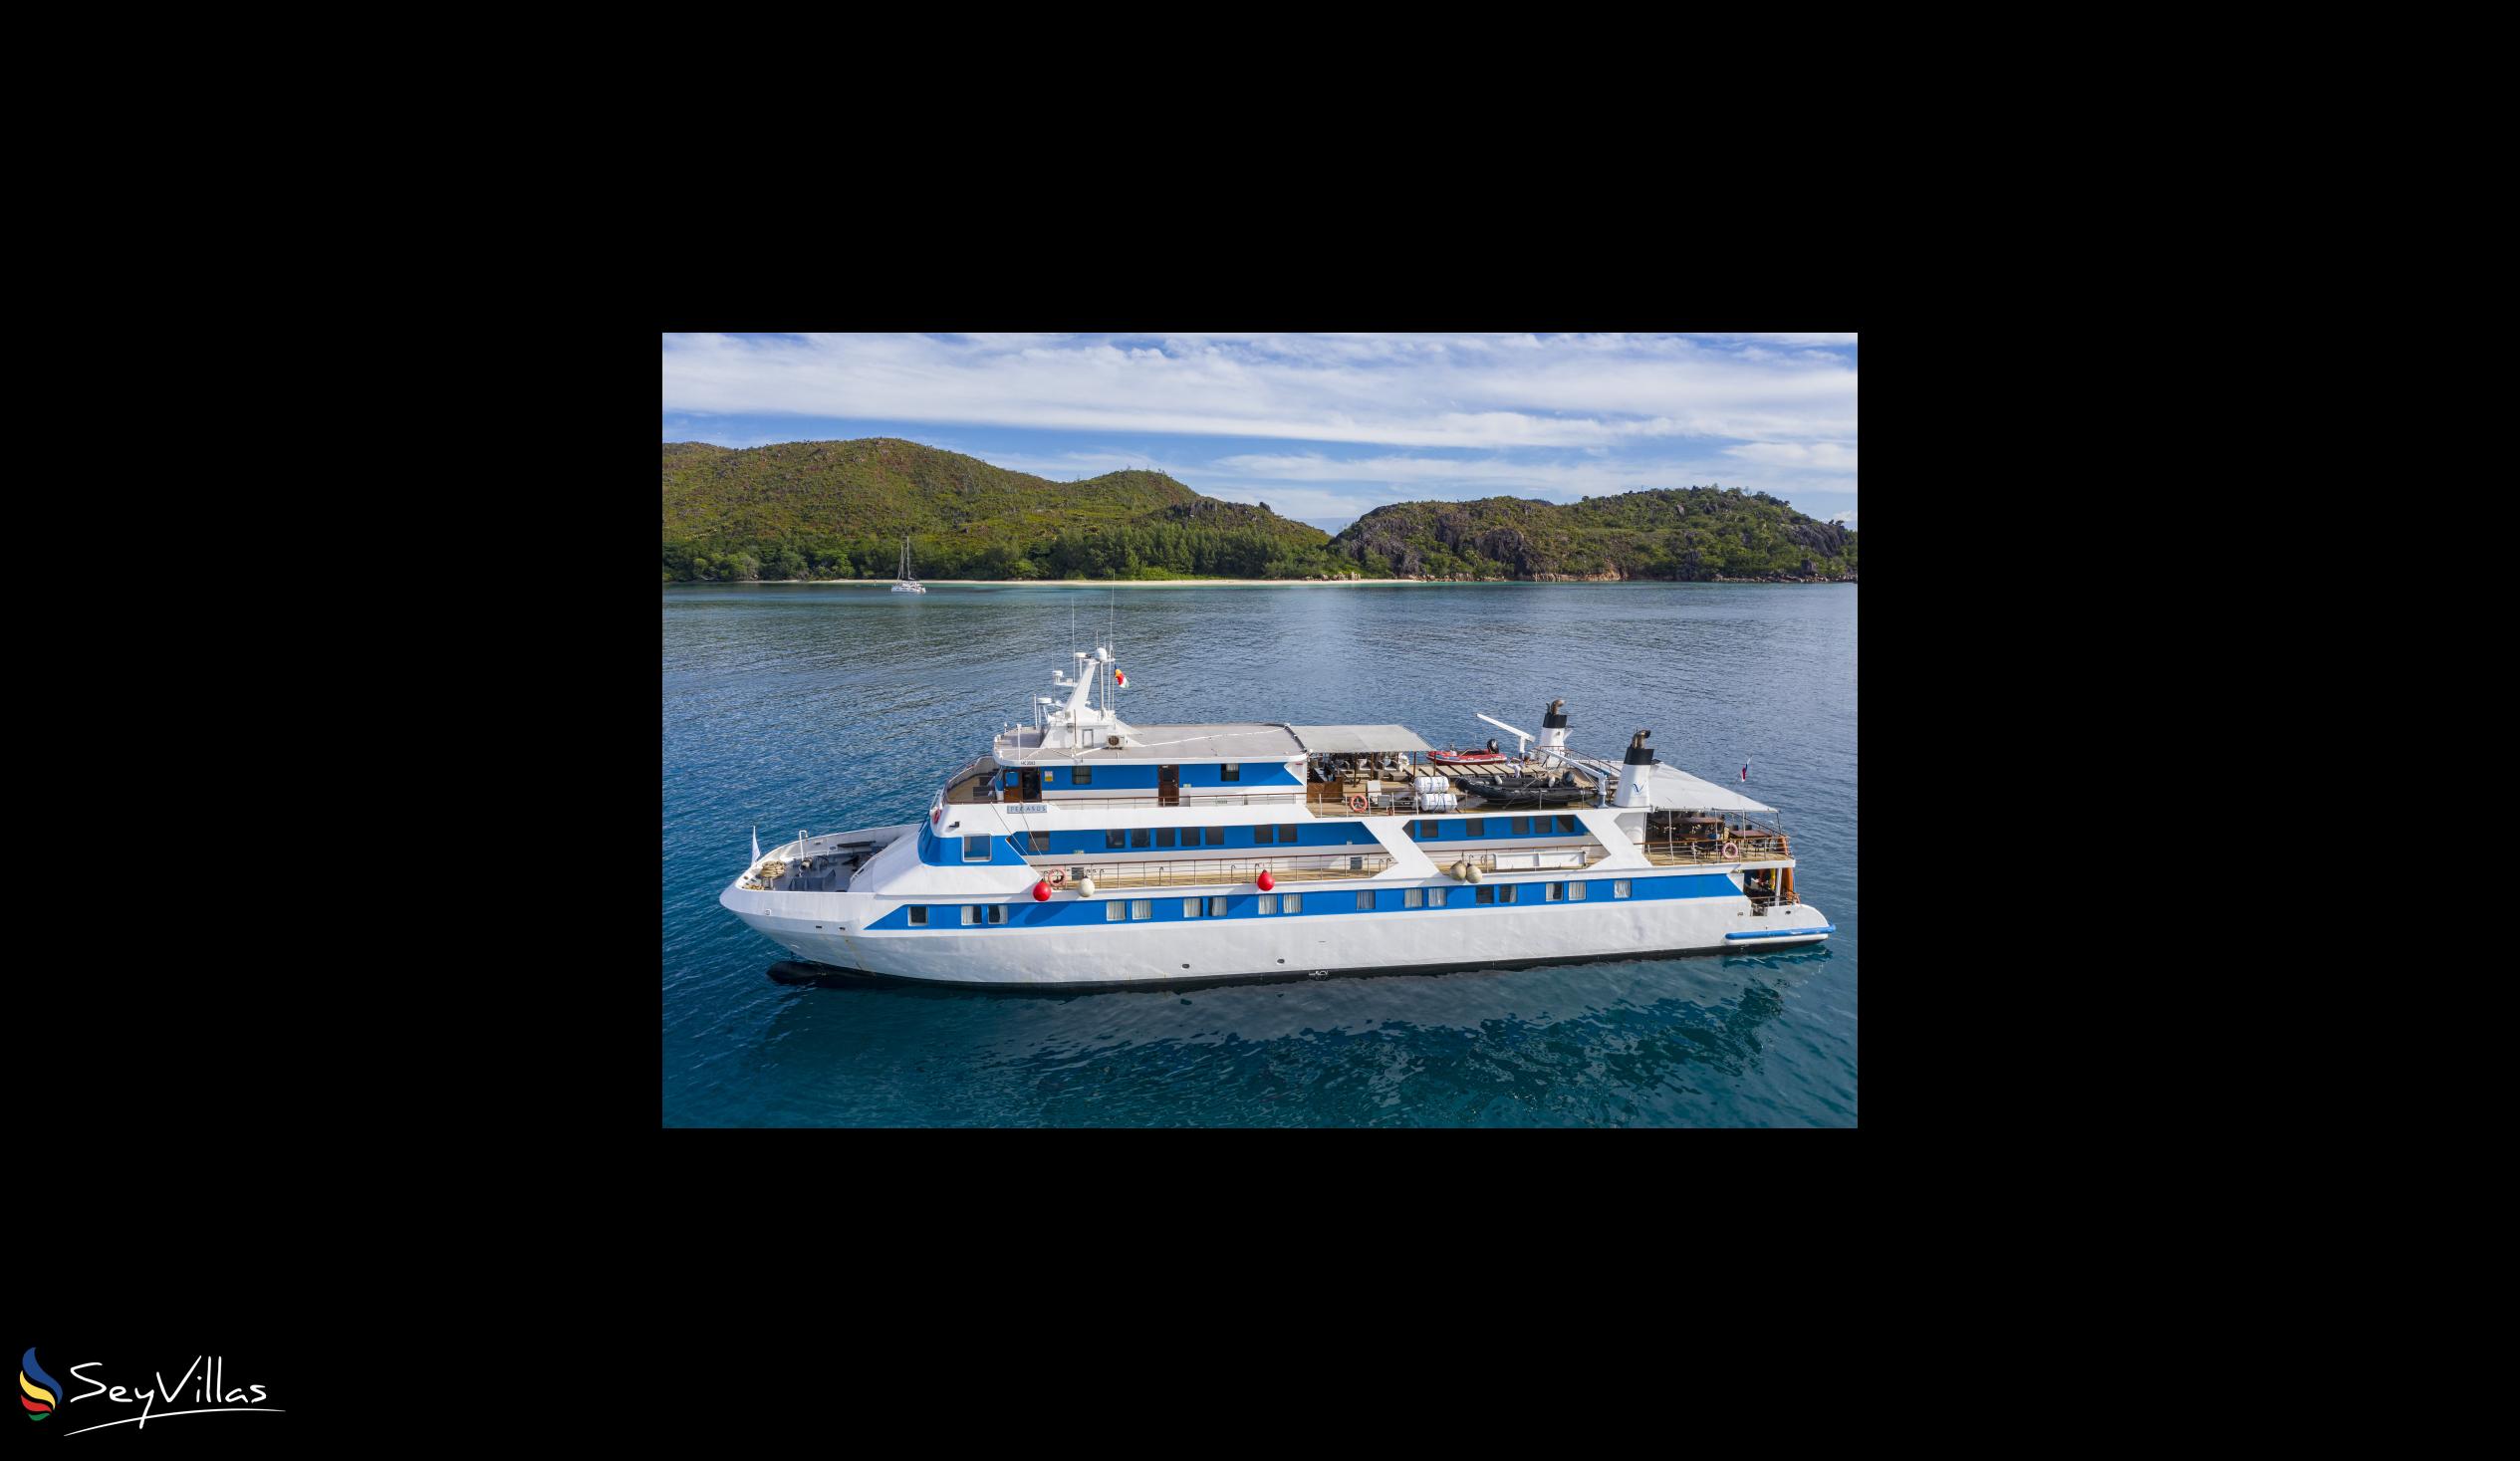 Foto 5: Pegasus Cruise (Variety Garden of Eden 7 nights) - Aussenbereich - Seychellen (Seychellen)